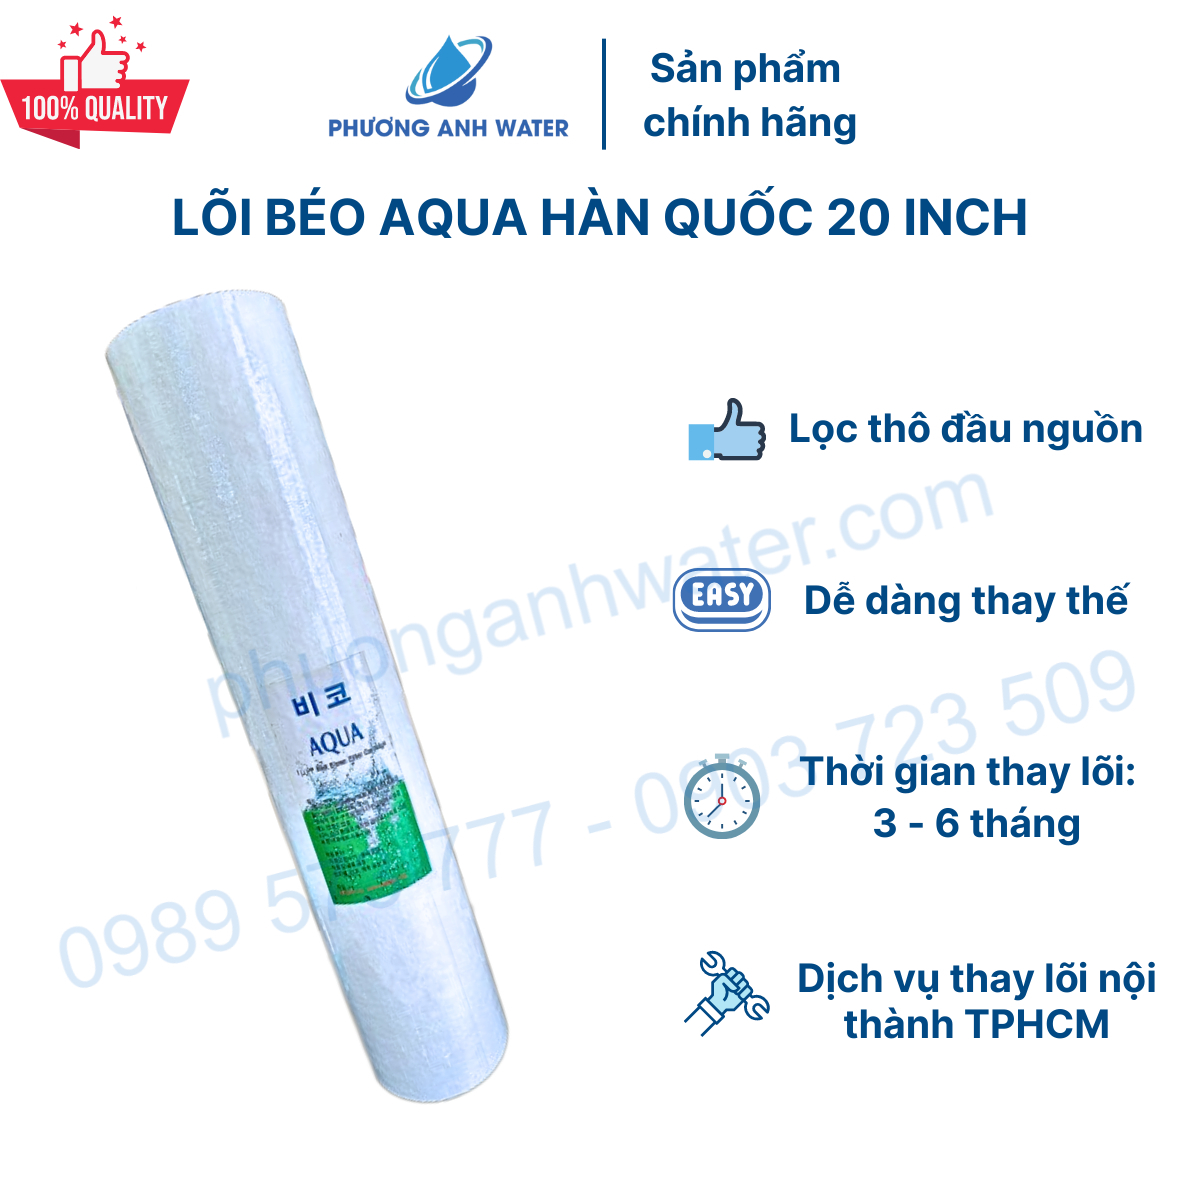 Lõi béo Aqua Hàn Quốc 20 inch dành cho cột Bigblue